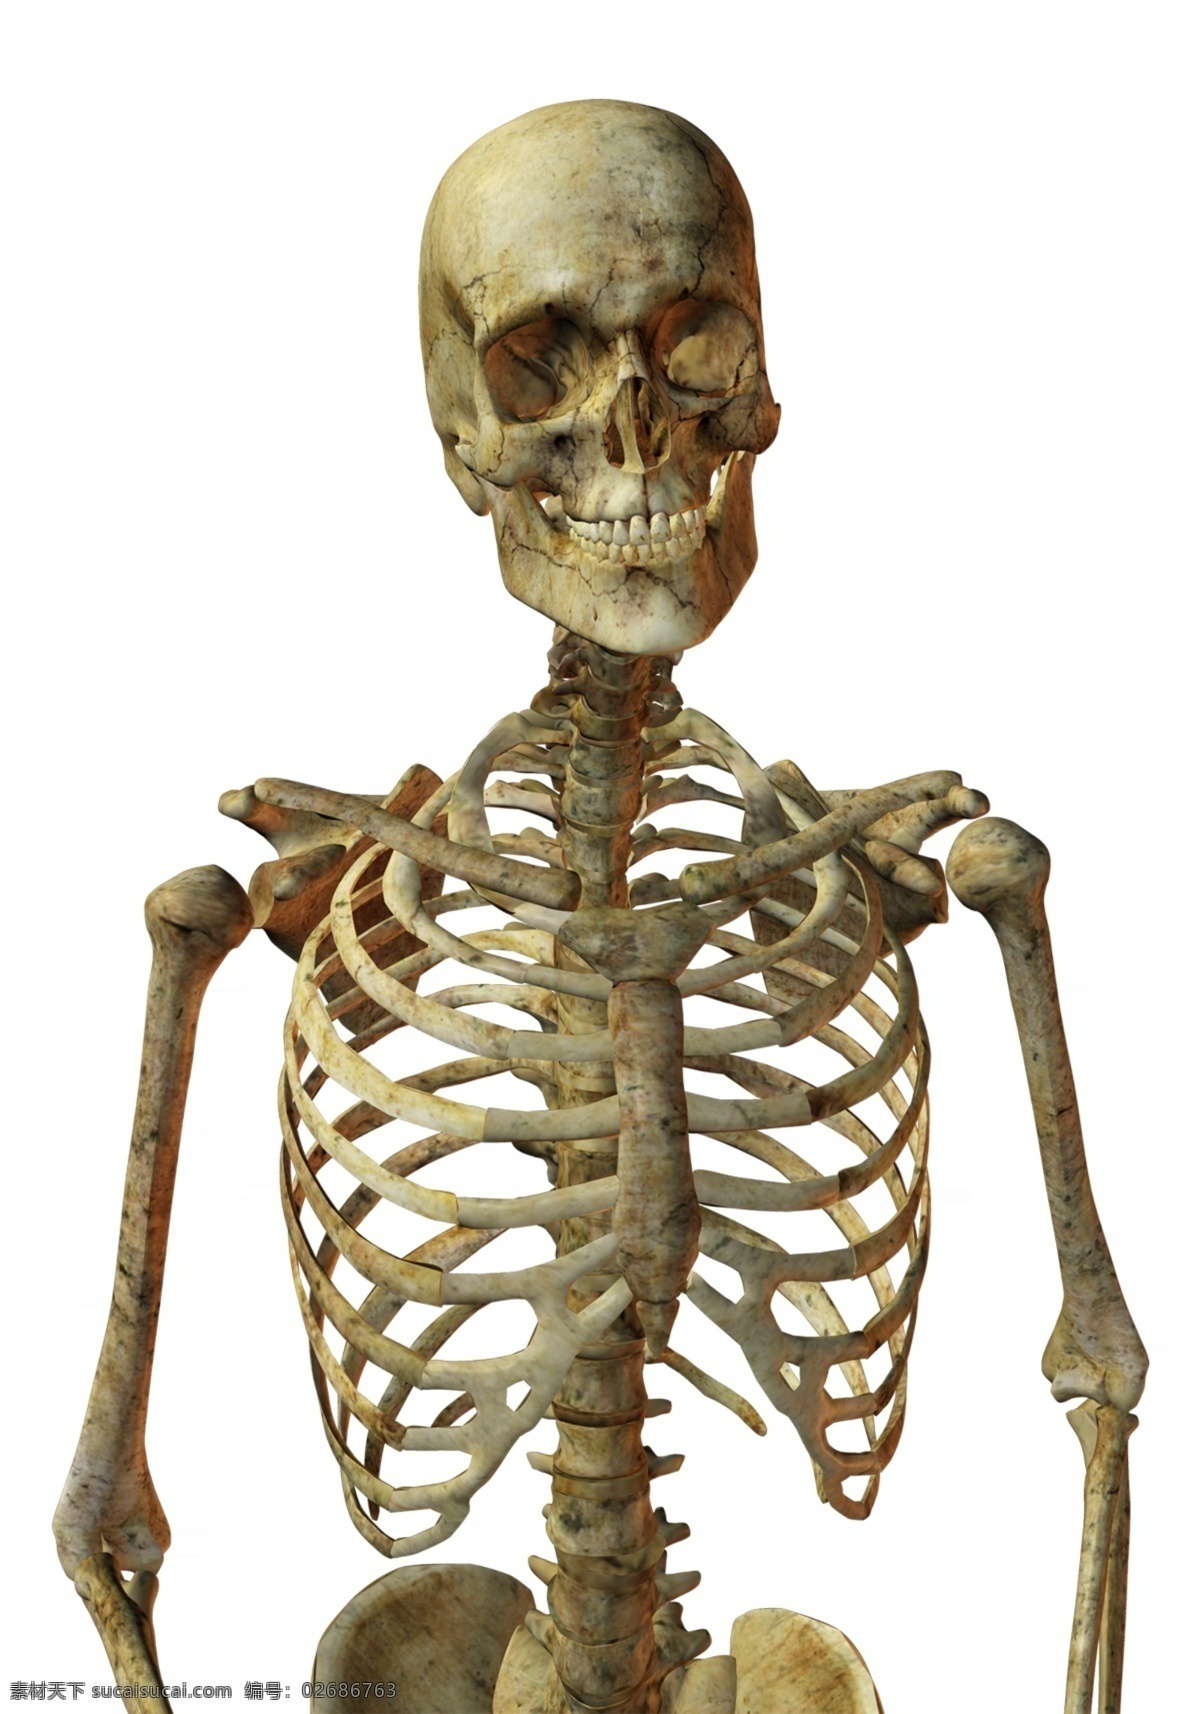 骷髅人 人体 骨骼 结构图 psd素材 骨骼图片 骷髅图片 人体骨骼 人体骨架图 骨架图片 骷髅素材 psd源文件